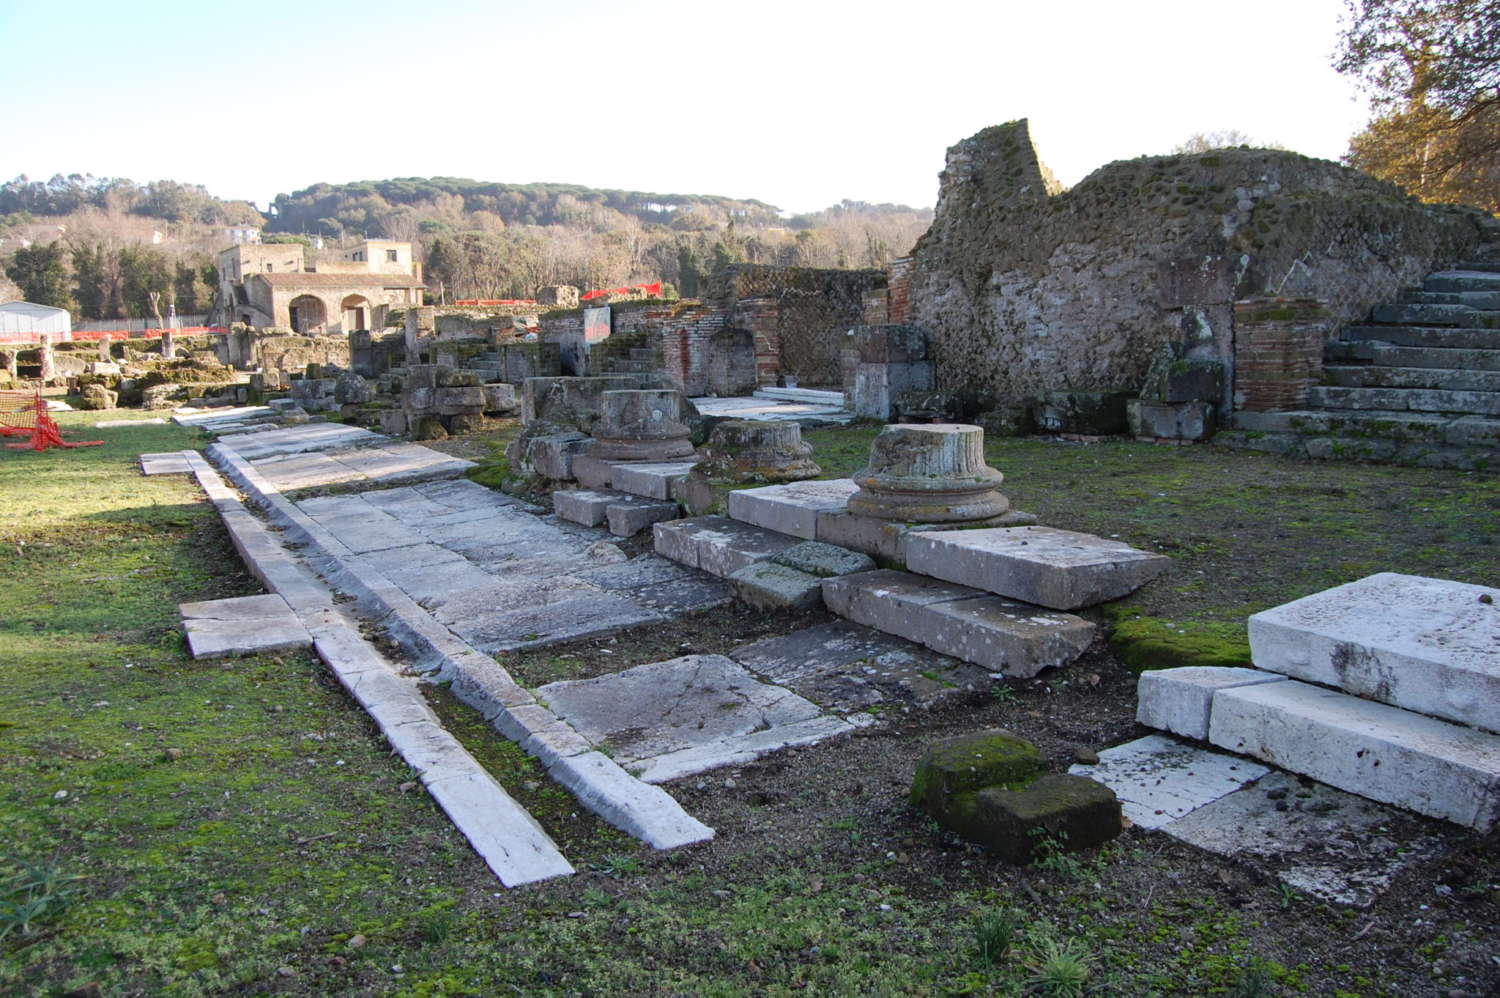 Scoperta al Parco archeologico dei Campi Flegrei, una tomba del II secolo a. C.